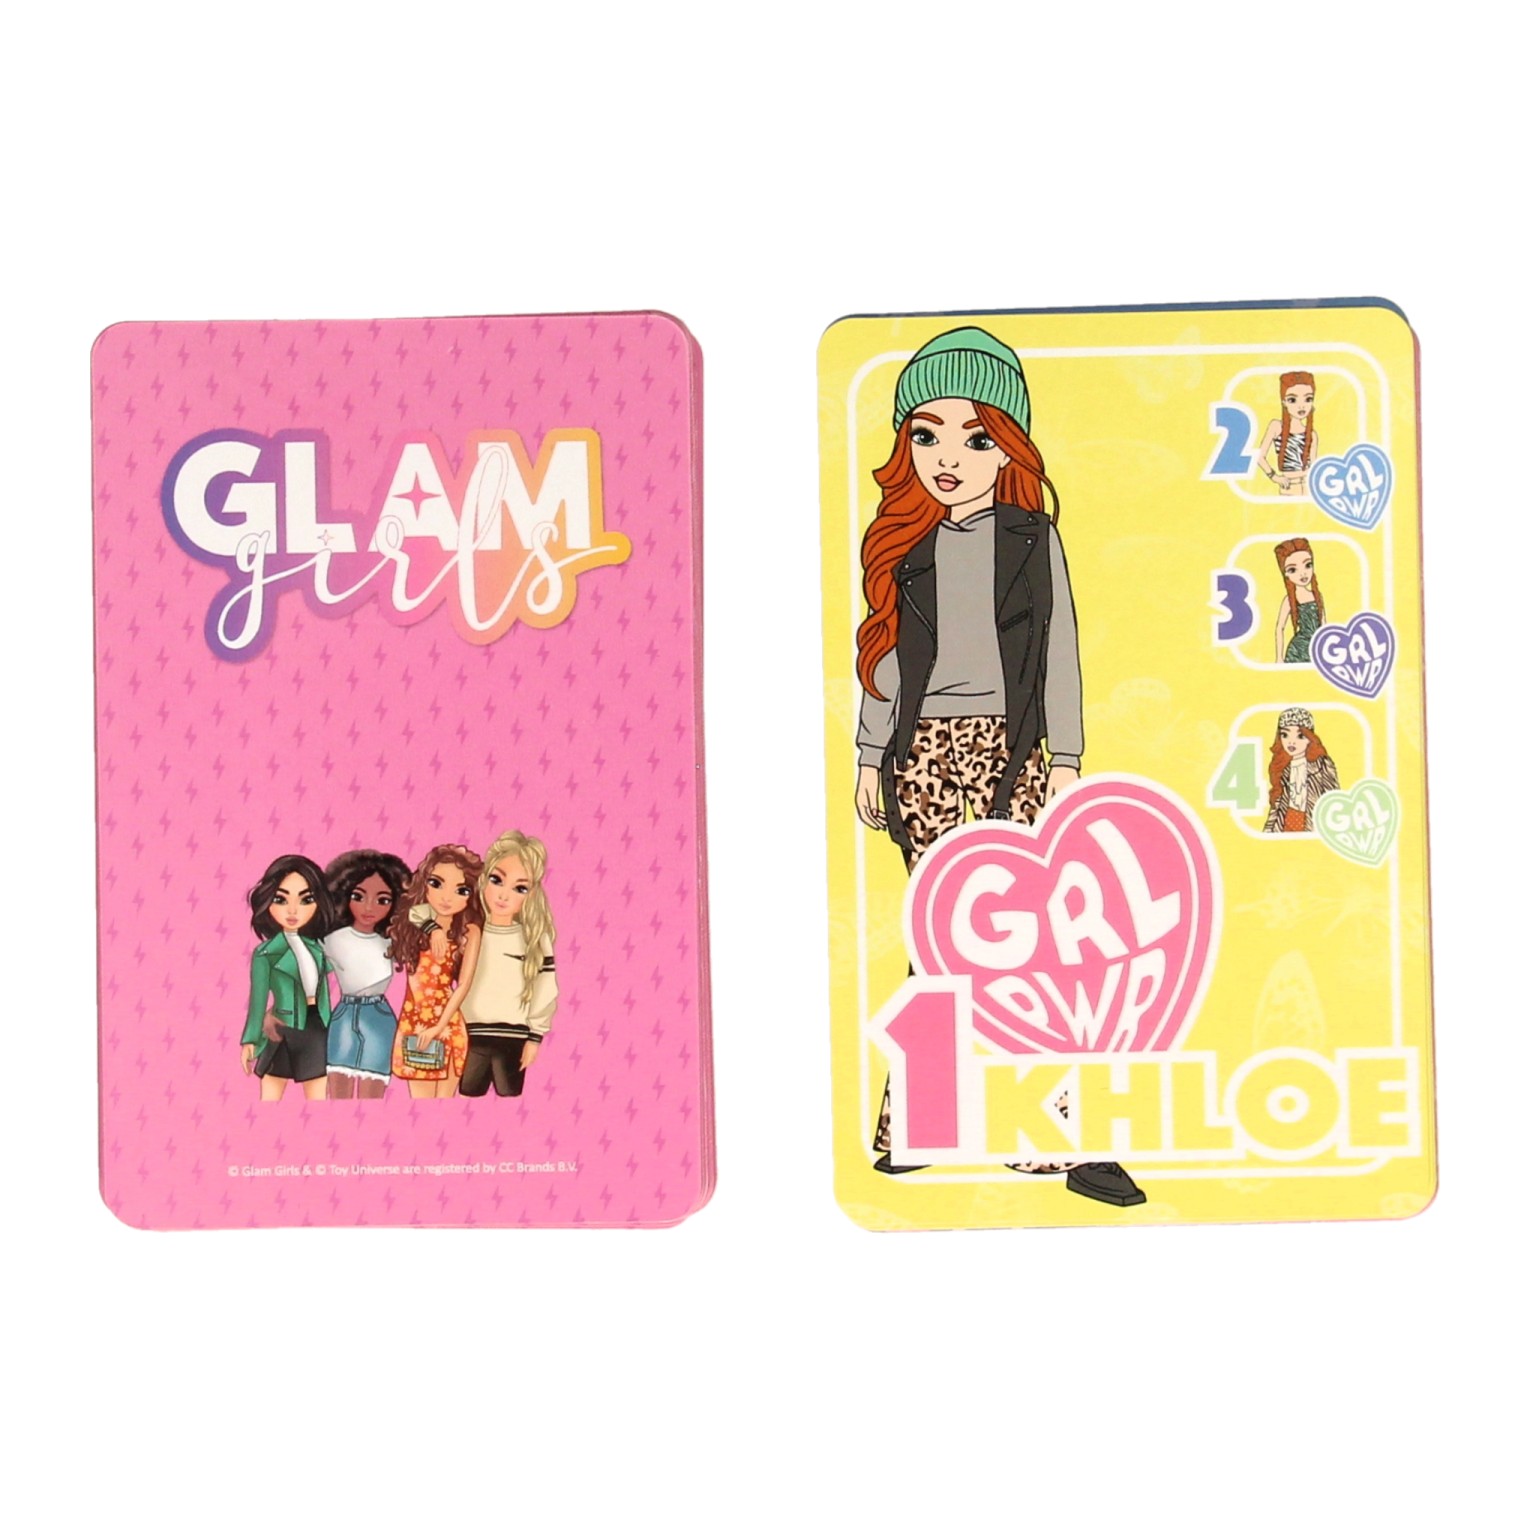 Glam Girls Girls Quartett